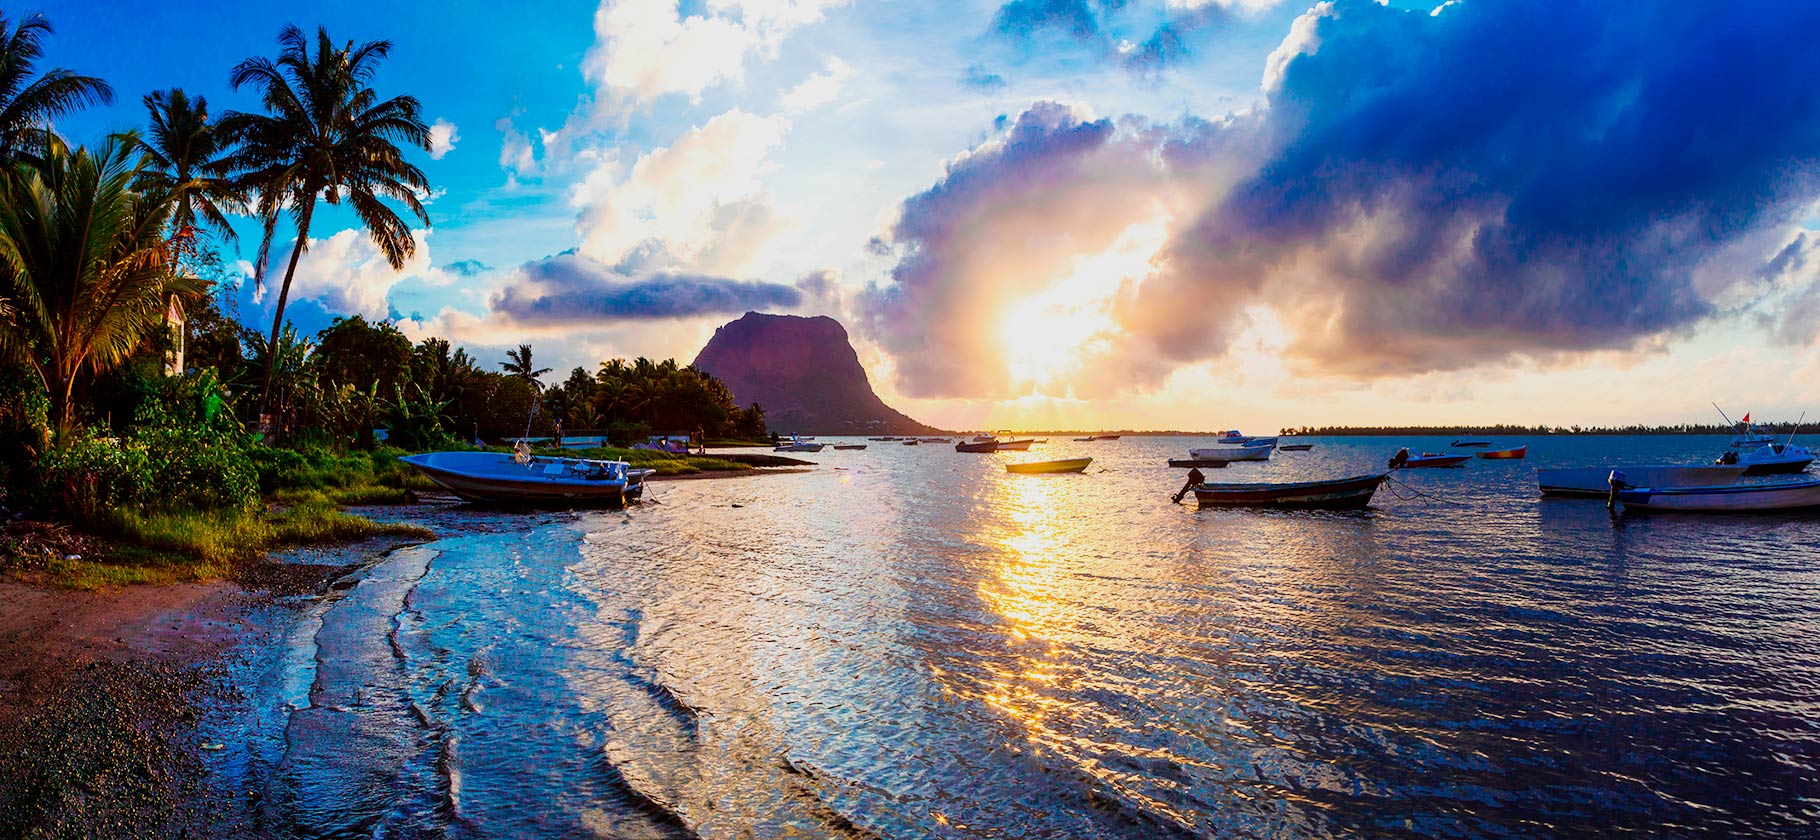 Маврикий: что нужно знать перед поездкой